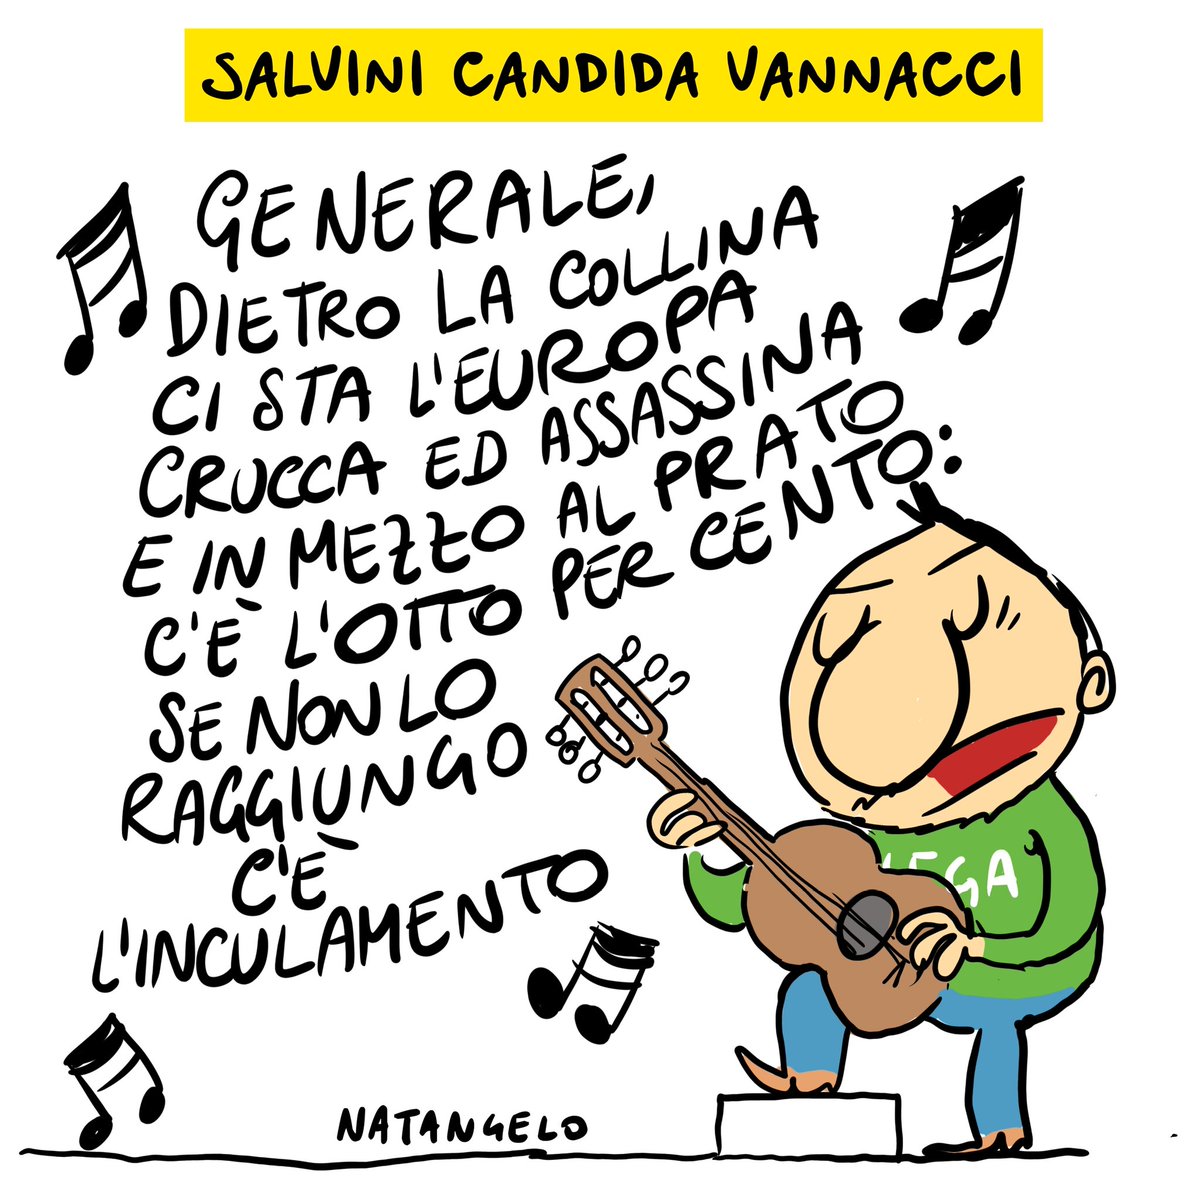 Generale - la mia vignetta per la prima pagina de Il Fatto Quotidiano oggi in edicola! 

#vannacci #salvini #degregori #lega #generale #vignetta #fumetto #memeitaliani #umorismo #satira #humor #natangelo